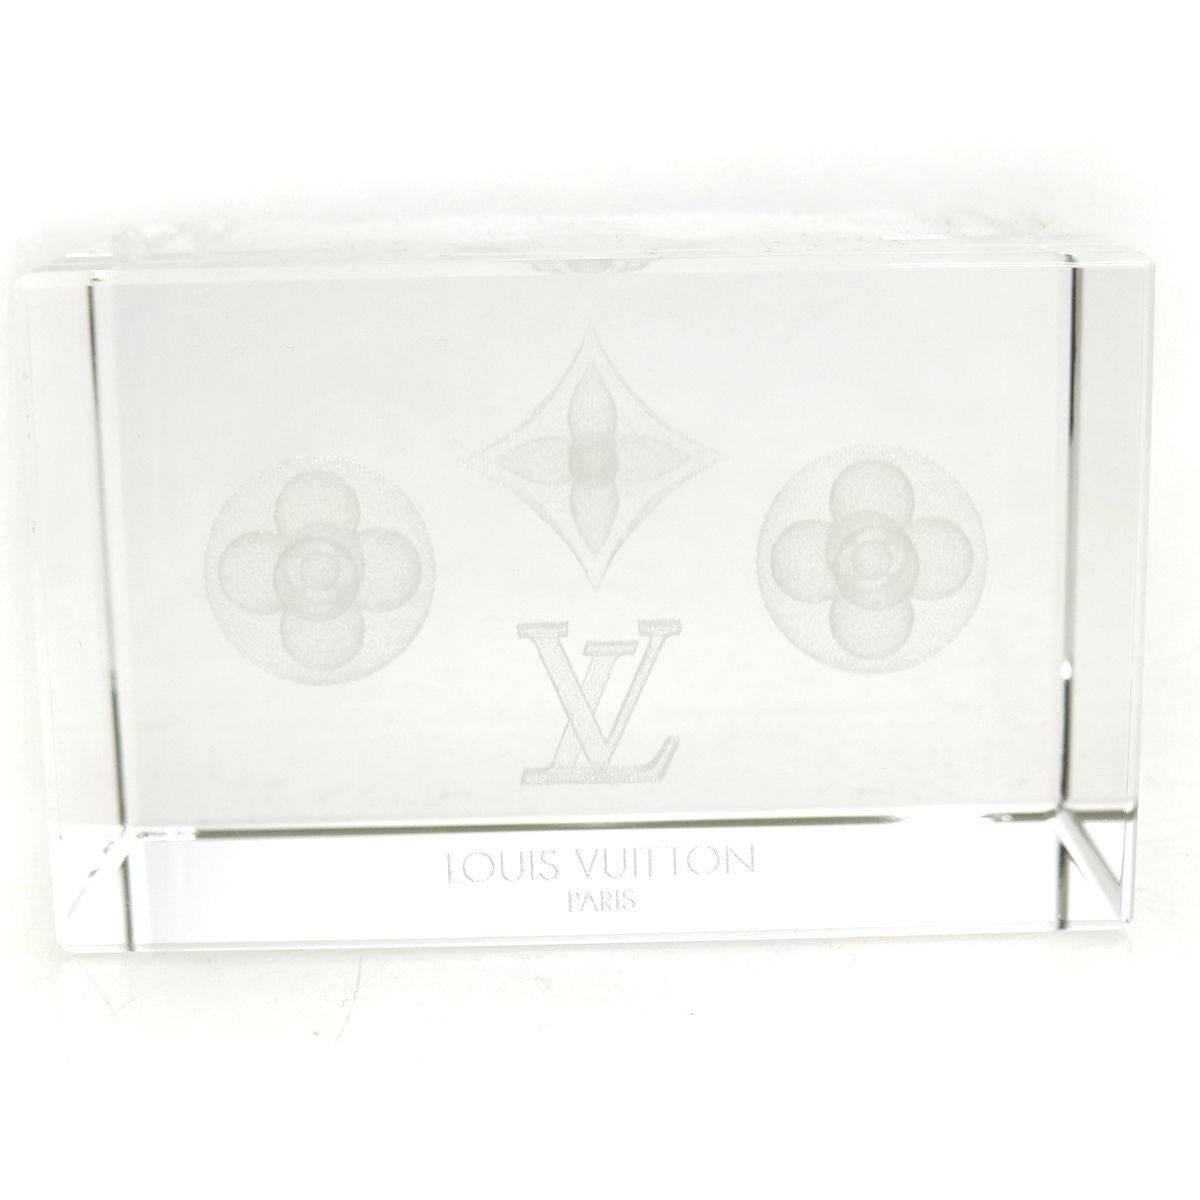 NOUVEAU ! Louis Vuitton Monogram Crystal Cube Desk Table Decorative Paper Weight in Box

Lourd et substantiel, cet objet de décoration est l'accent idéal pour un bureau, une salle de séjour ou une table basse.

Cristal
Fabriqué en France 
Mesure 3